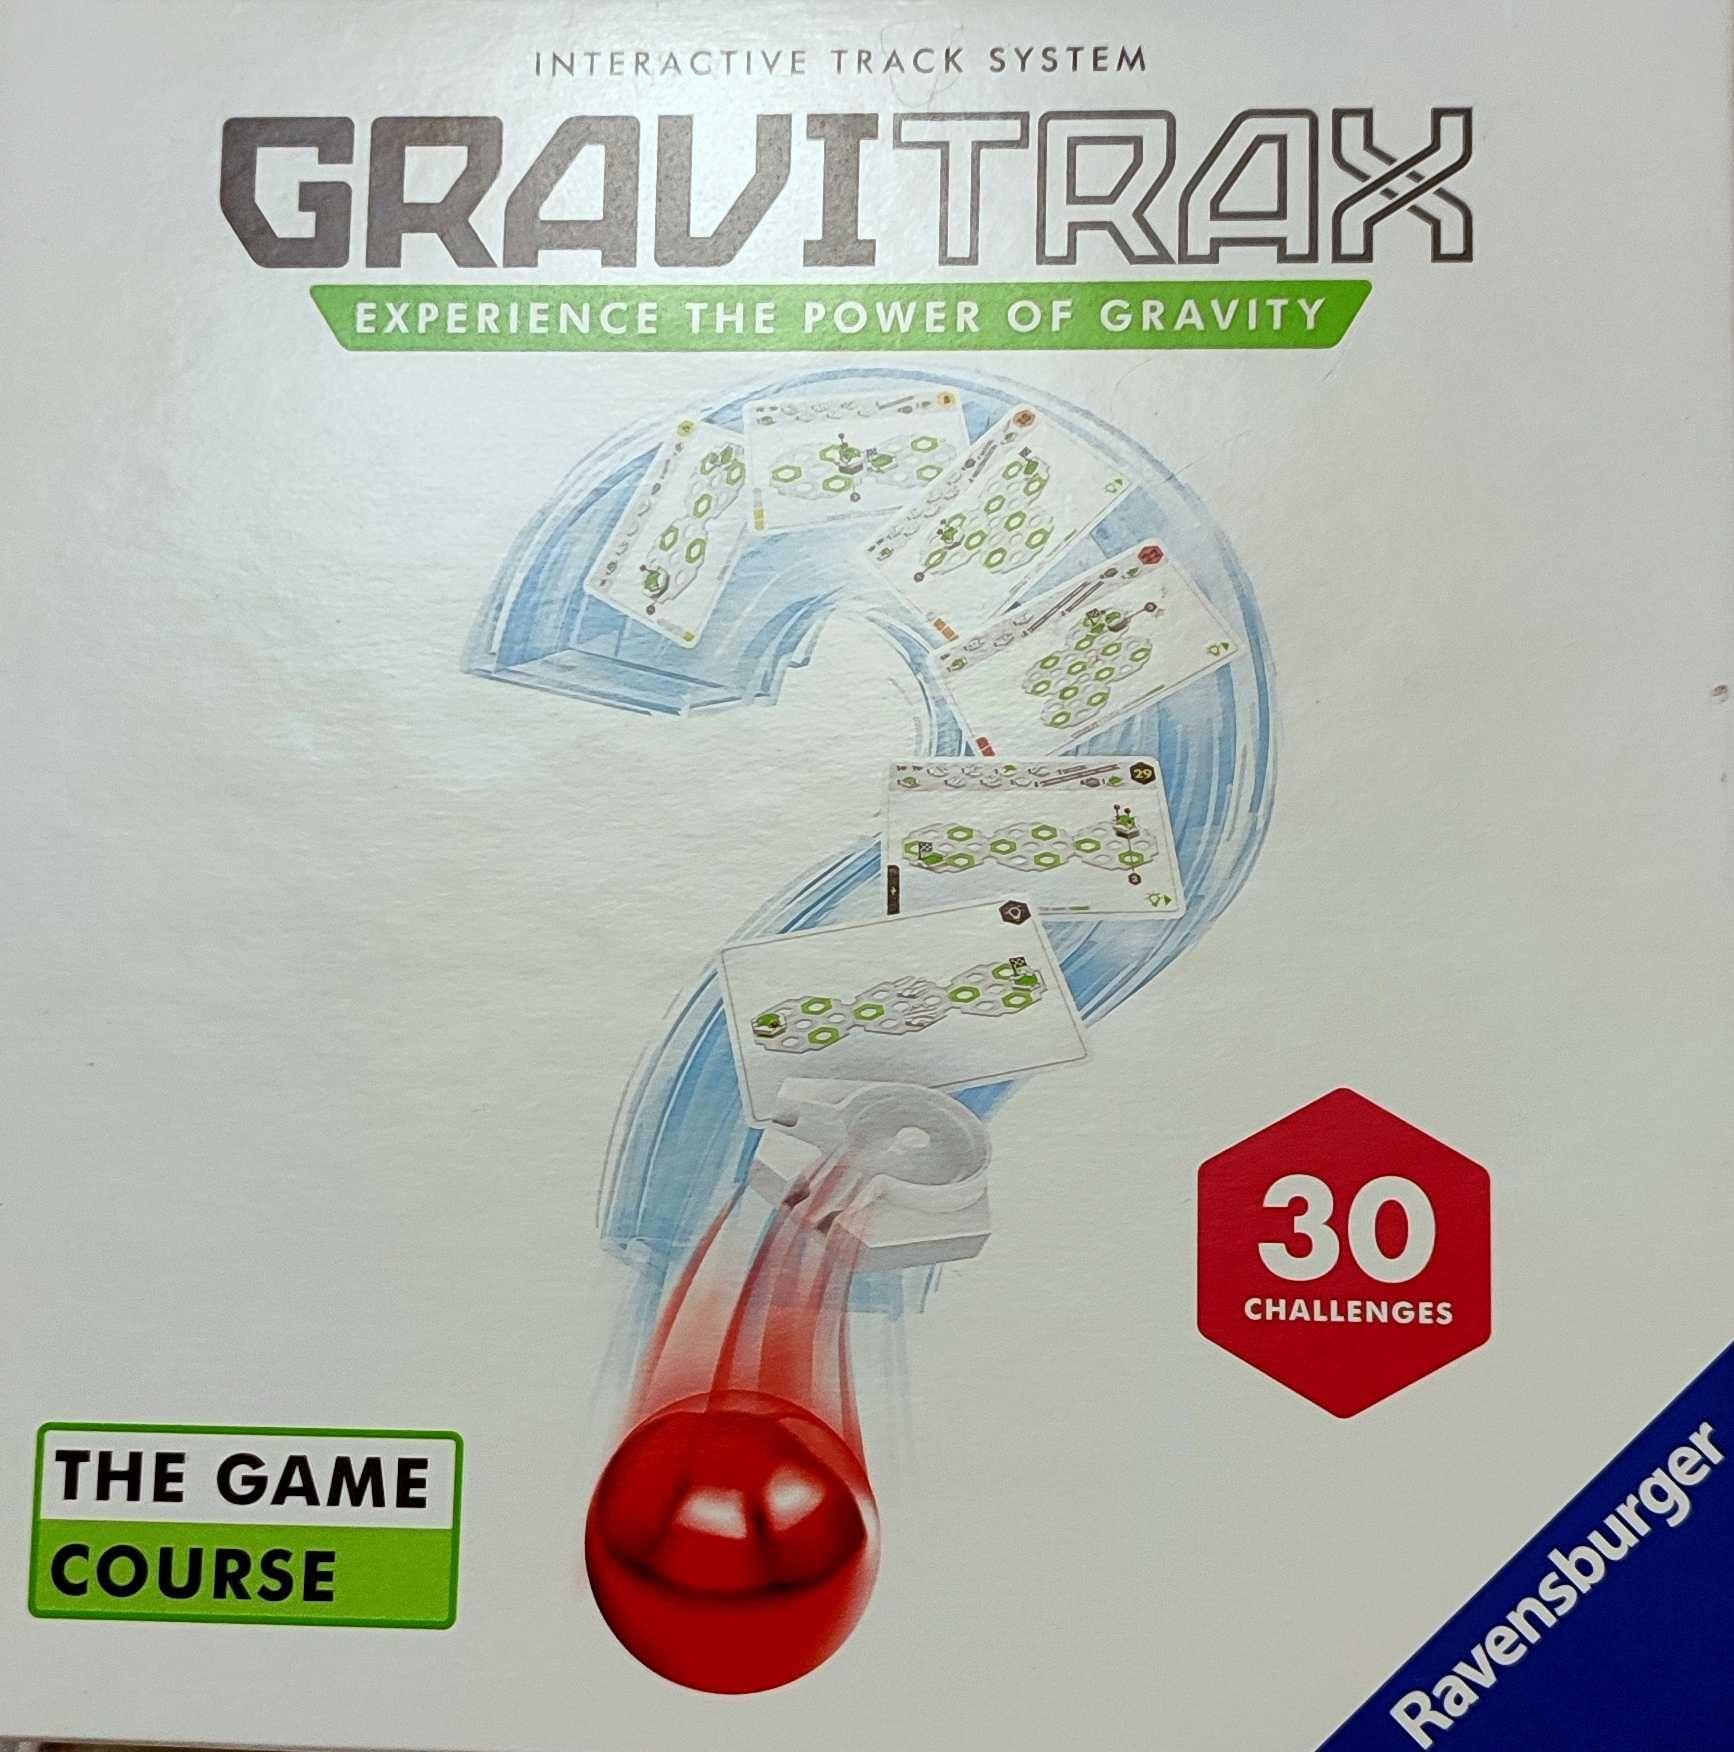 Gravitrax Course